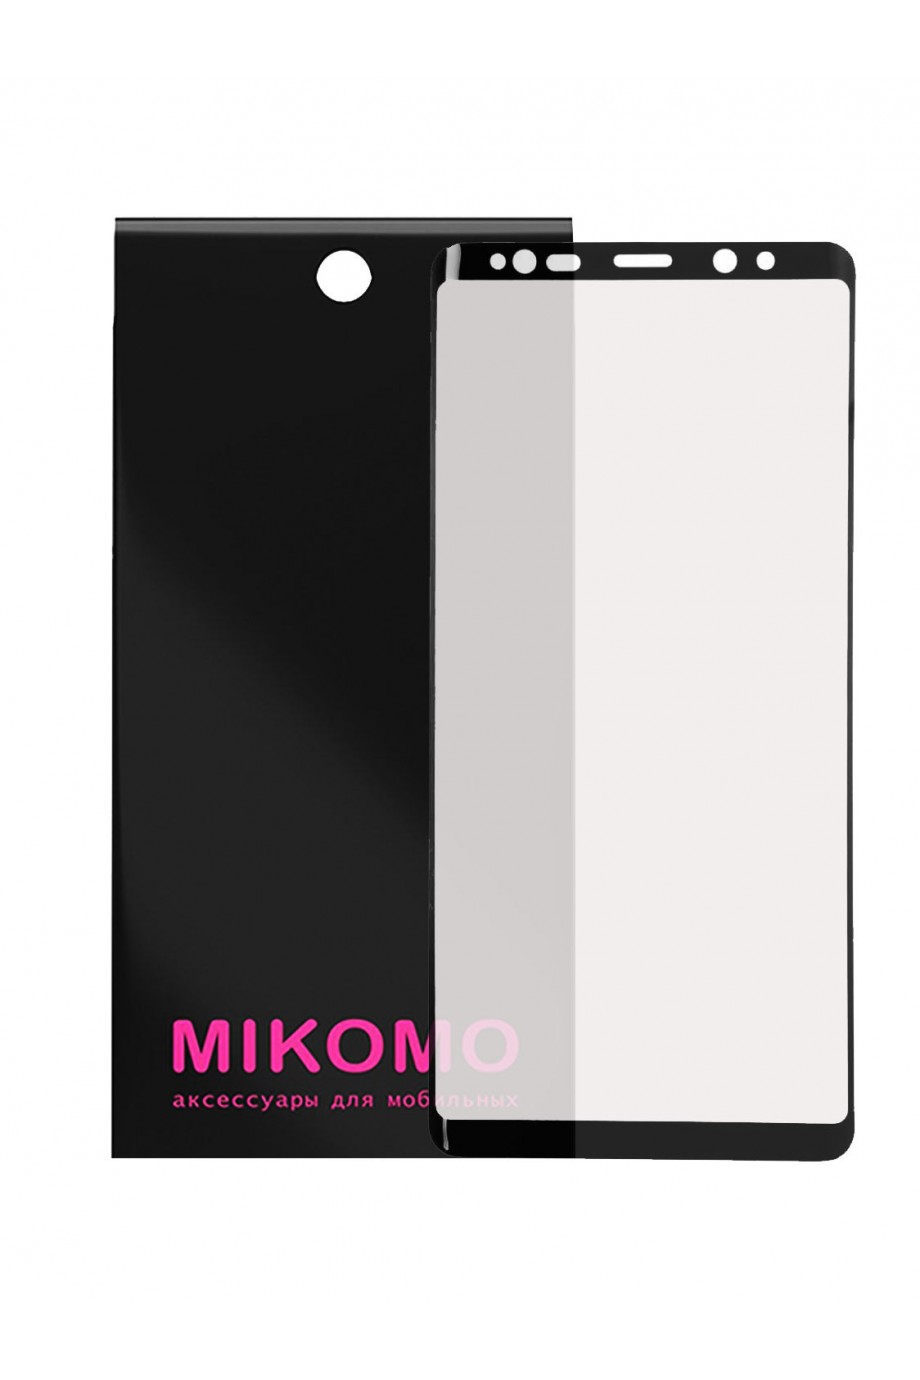 Защитная пленка 3D Mikomo для Samsung Galaxy Note 9, черная рамка, полный клей